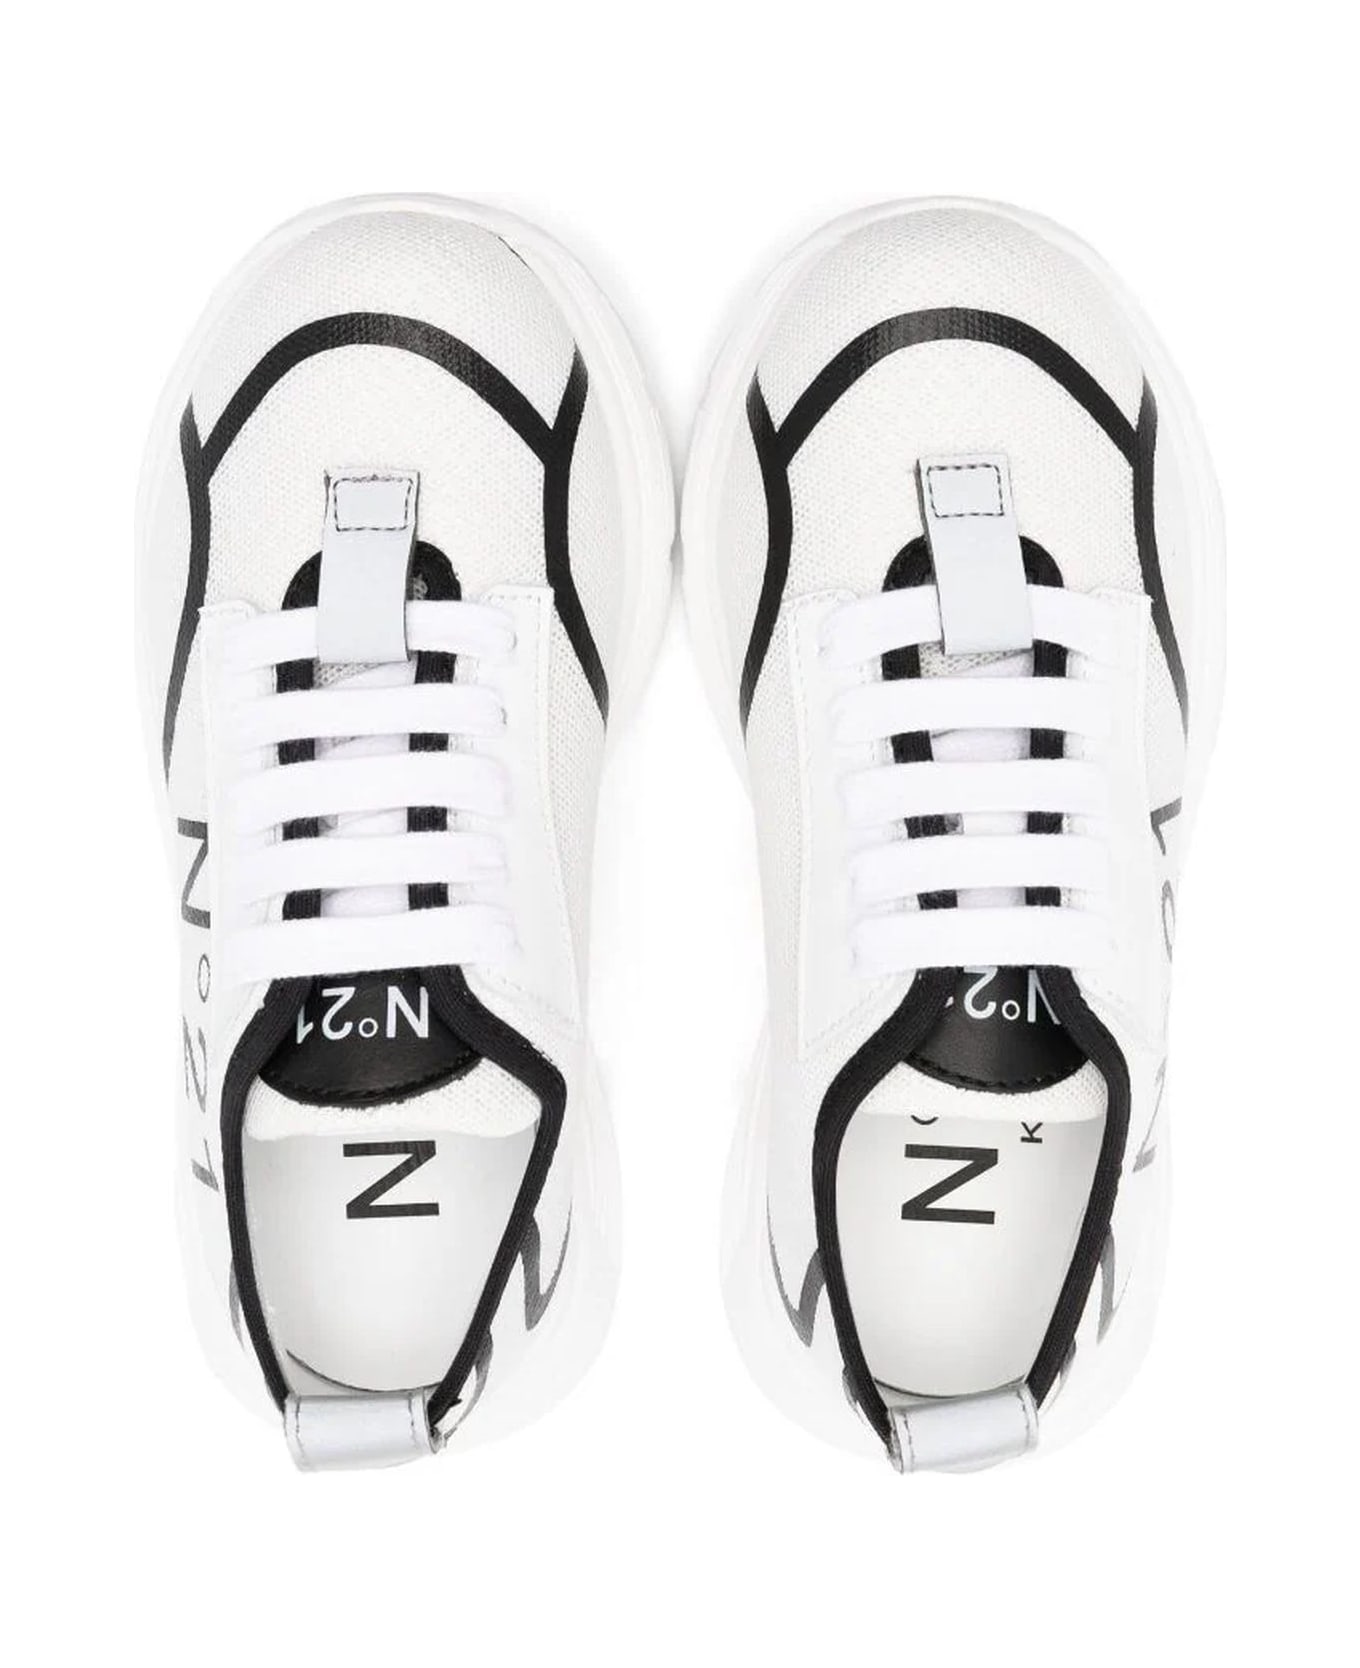 N.21 N°21 Sneakers White - White